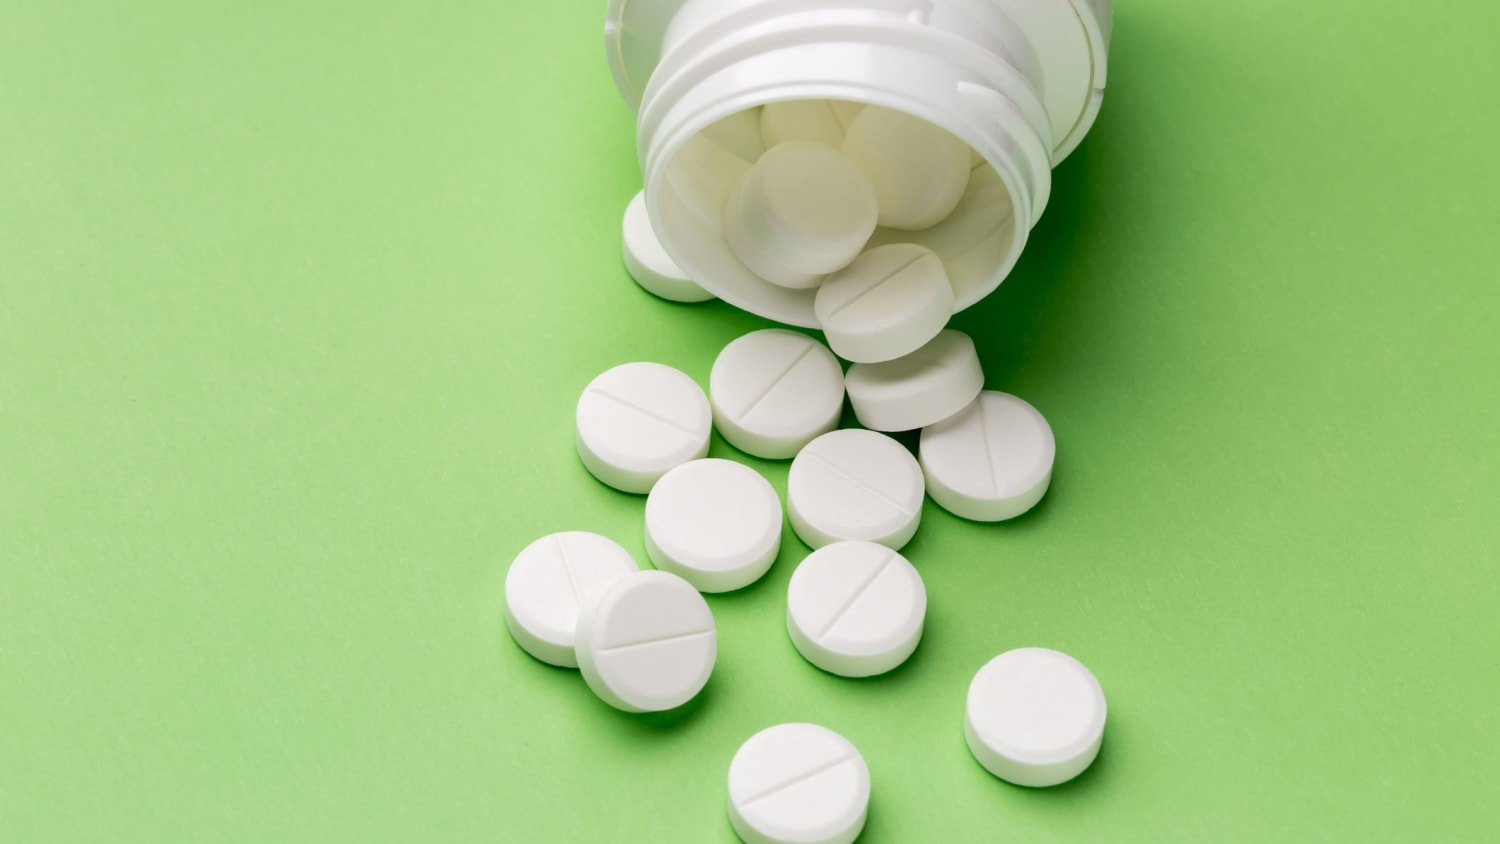 10 Facts About Aspirin